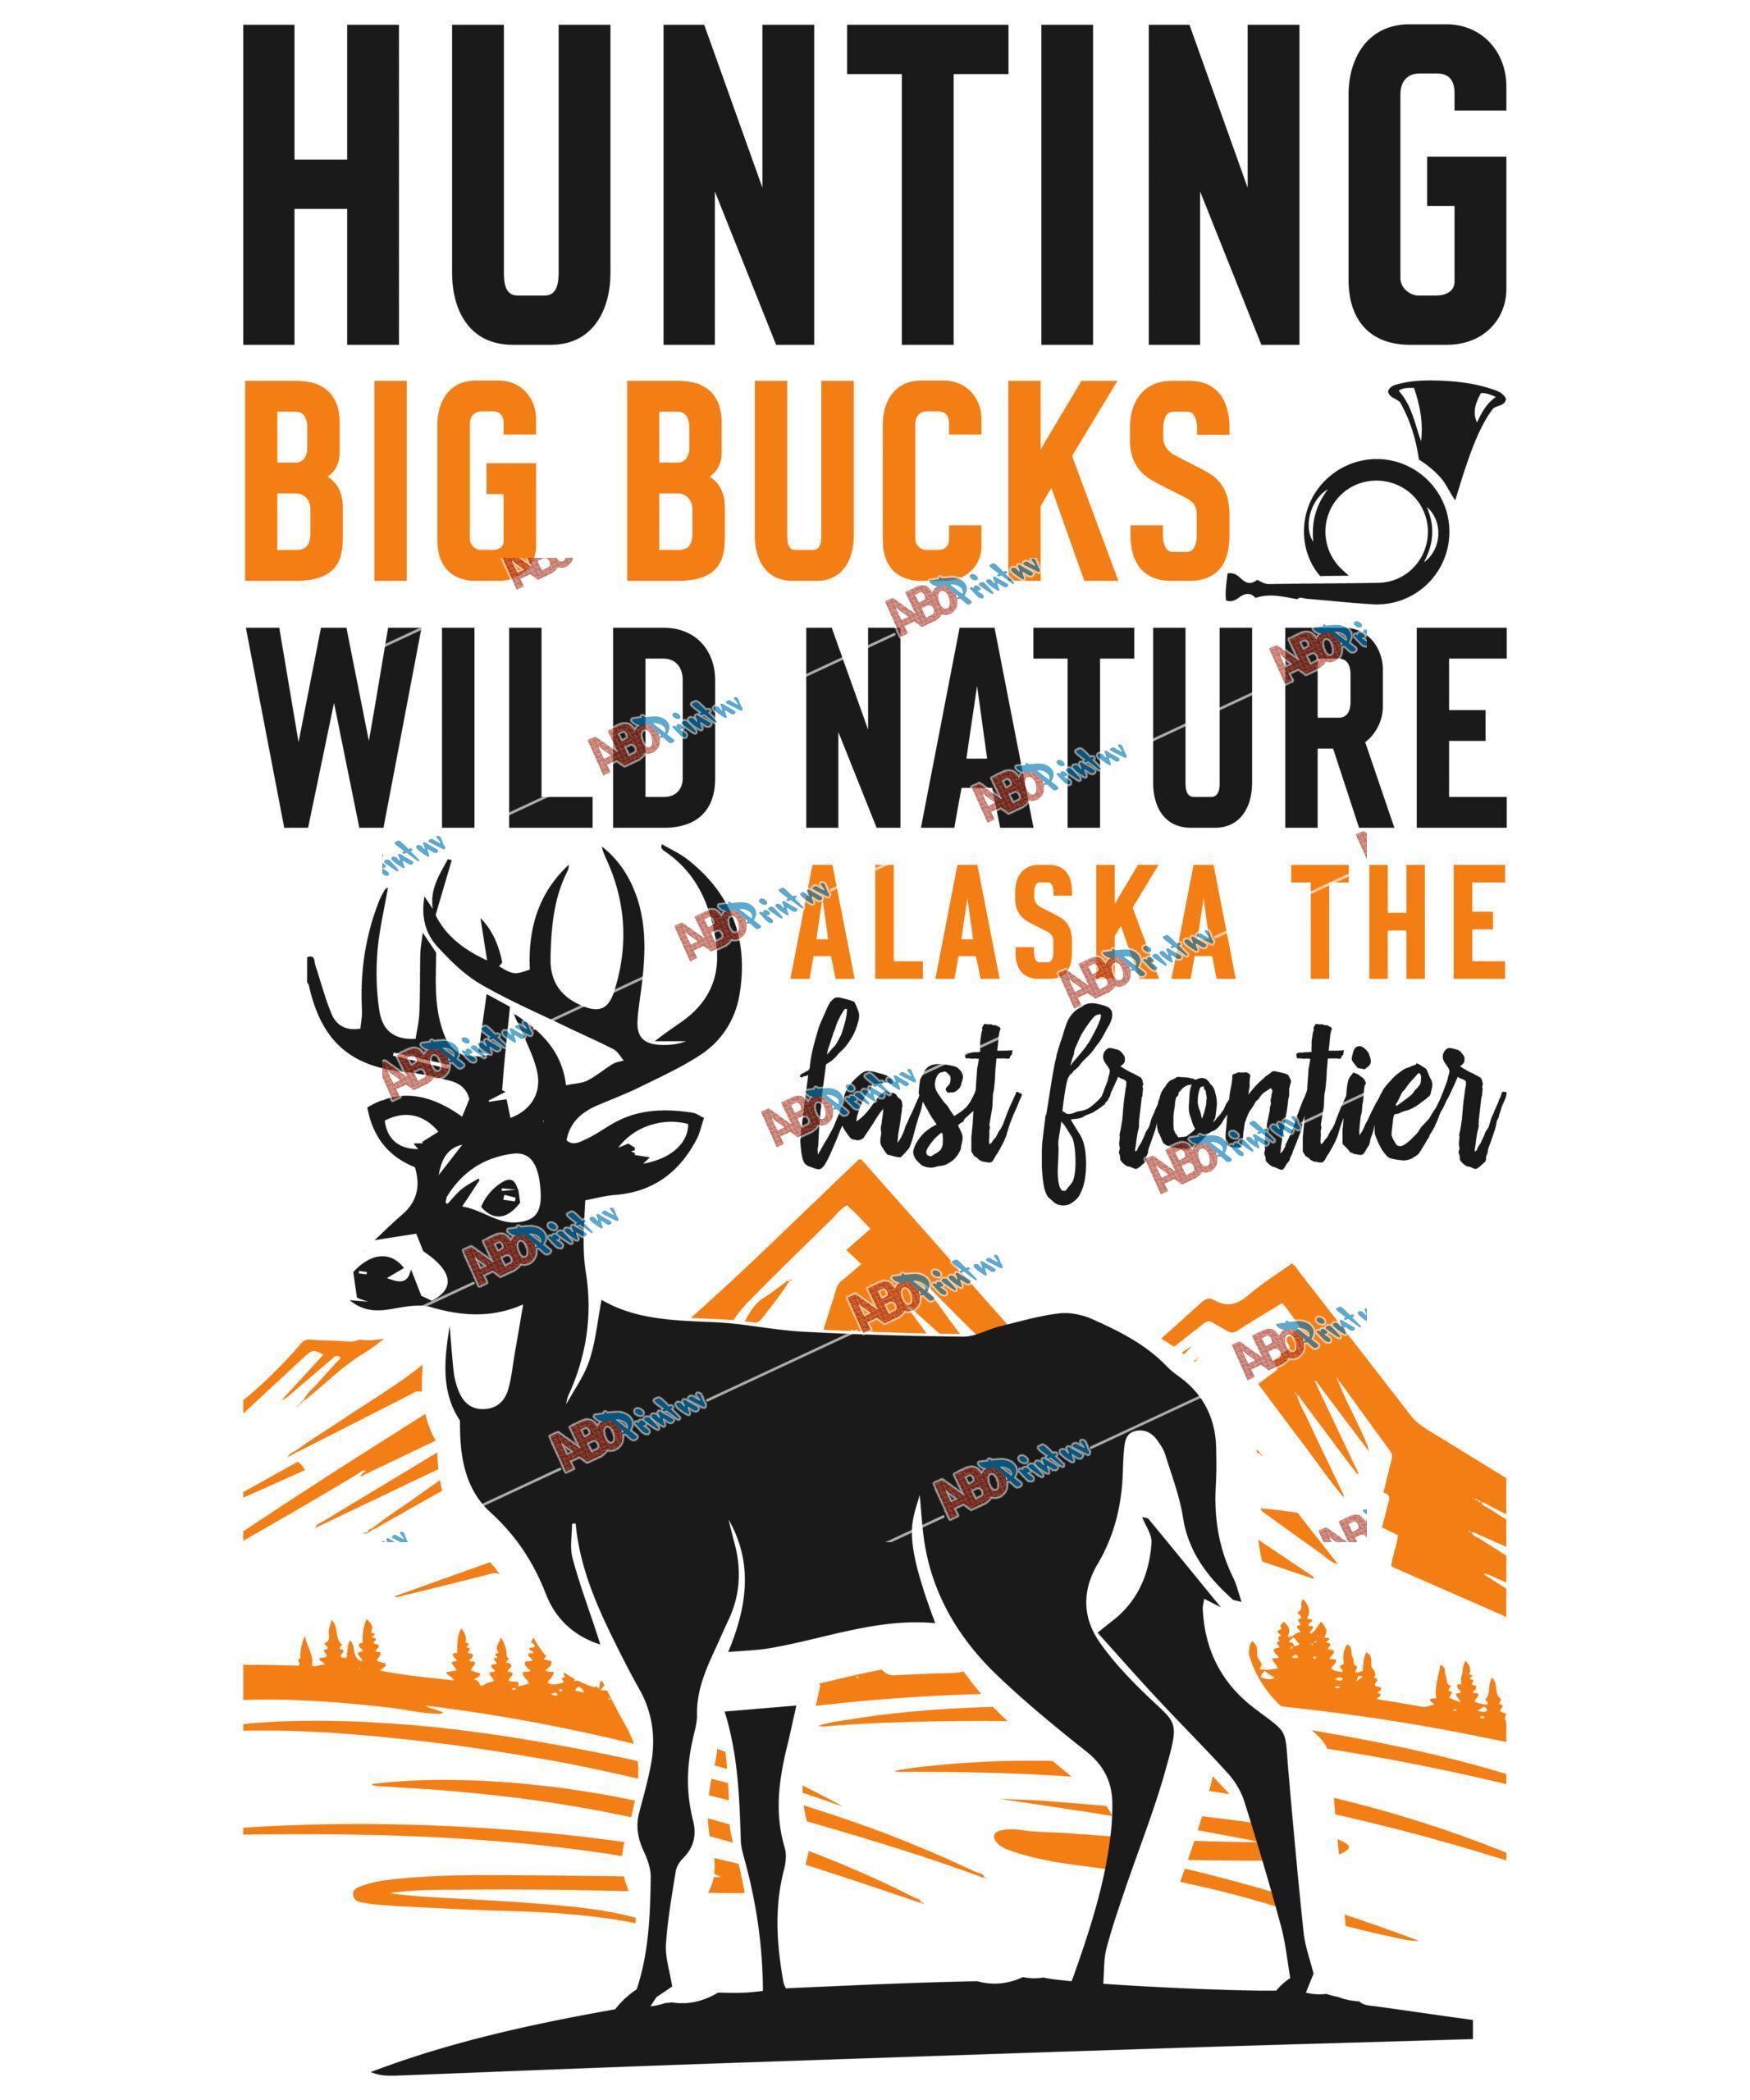 Hunting big bucks wild nature.jpg